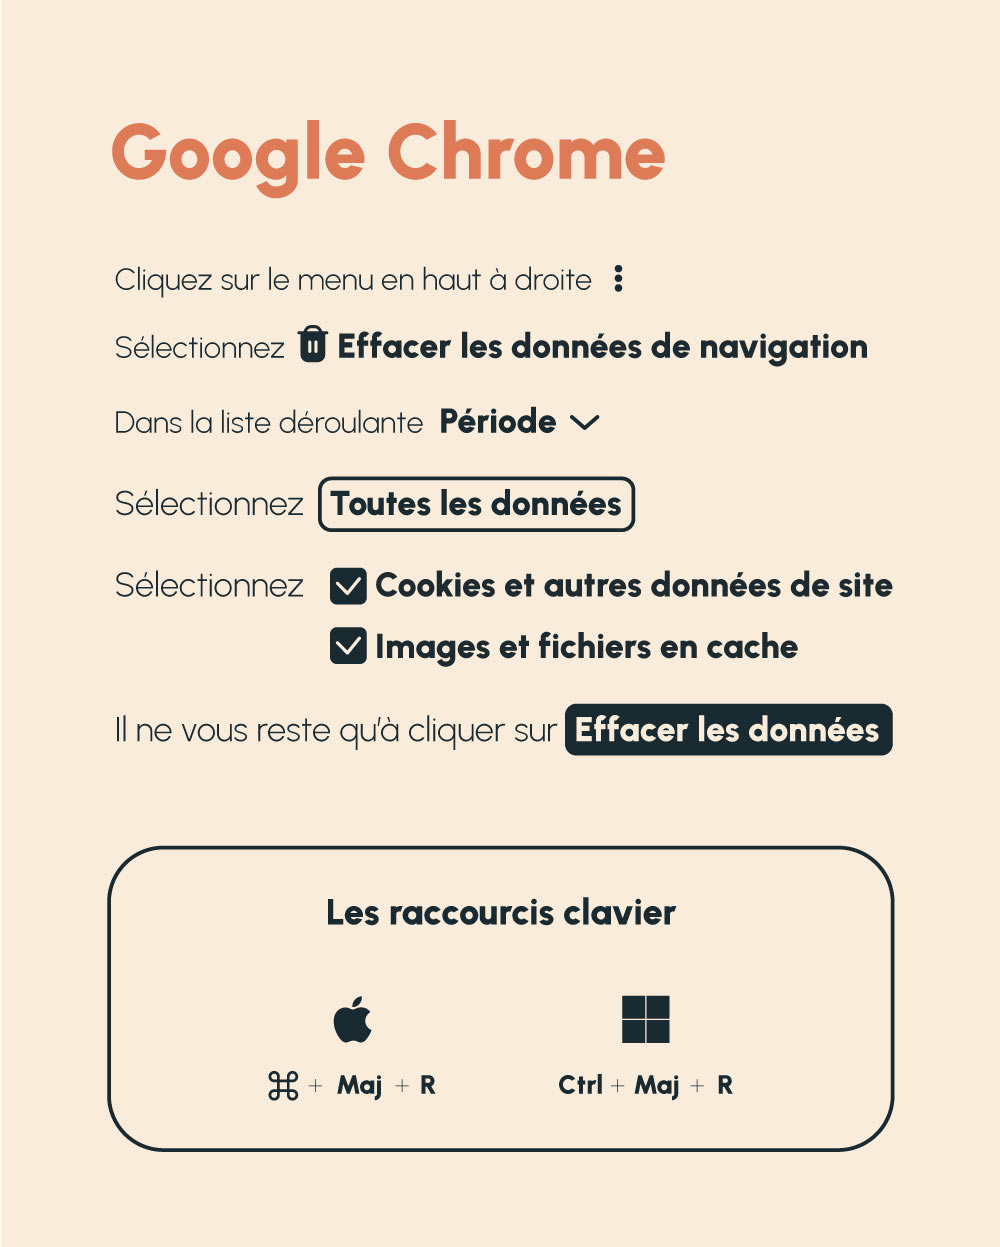 Raccourcis clavier vider le cache navigateur web google chrome agence Owmel communication digitale Saint Gilles Croix de Vie 85